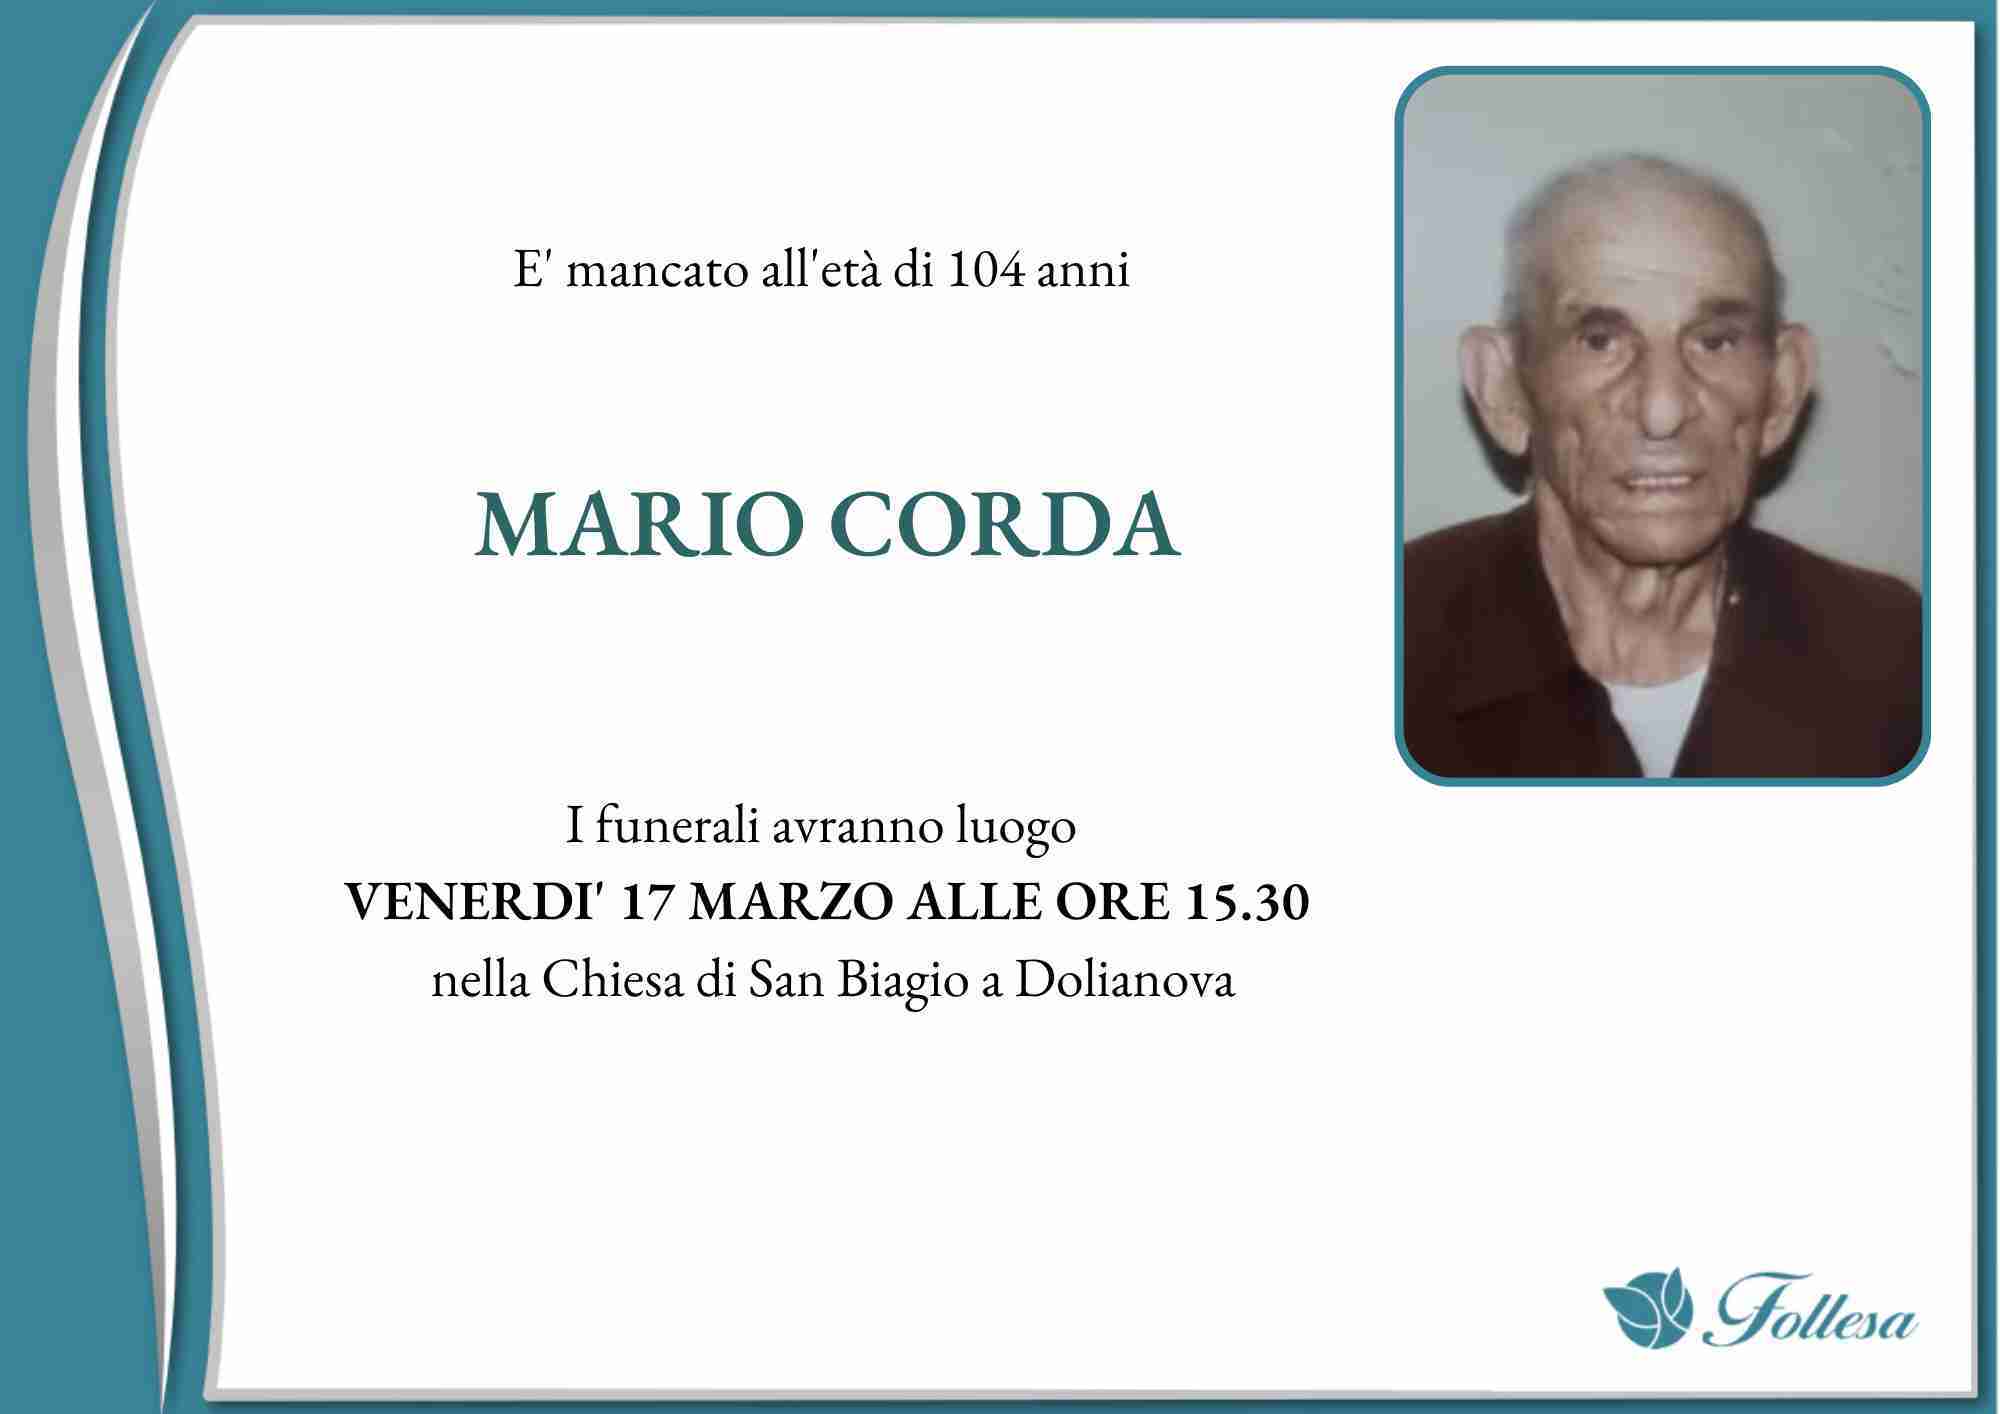 Mario Corda